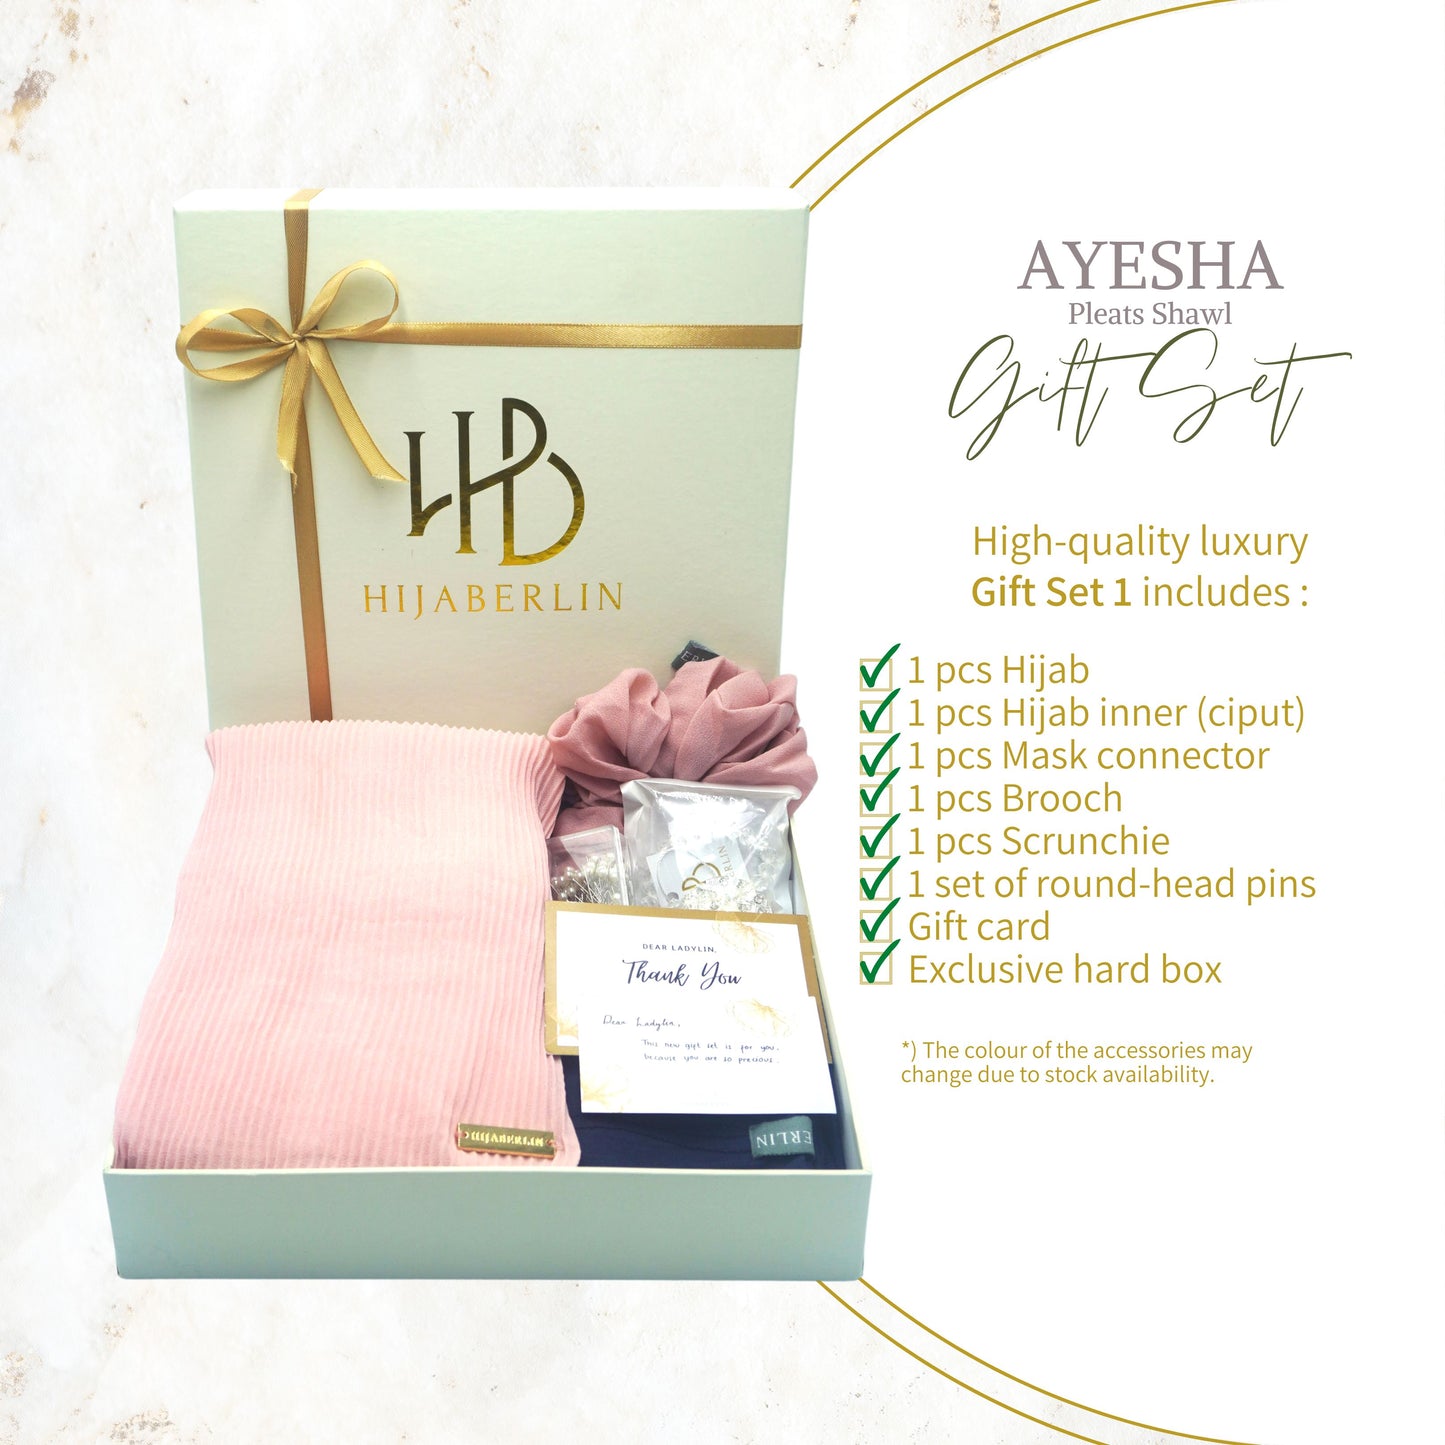 Ayesha Pleats Shawl Gift Set 1